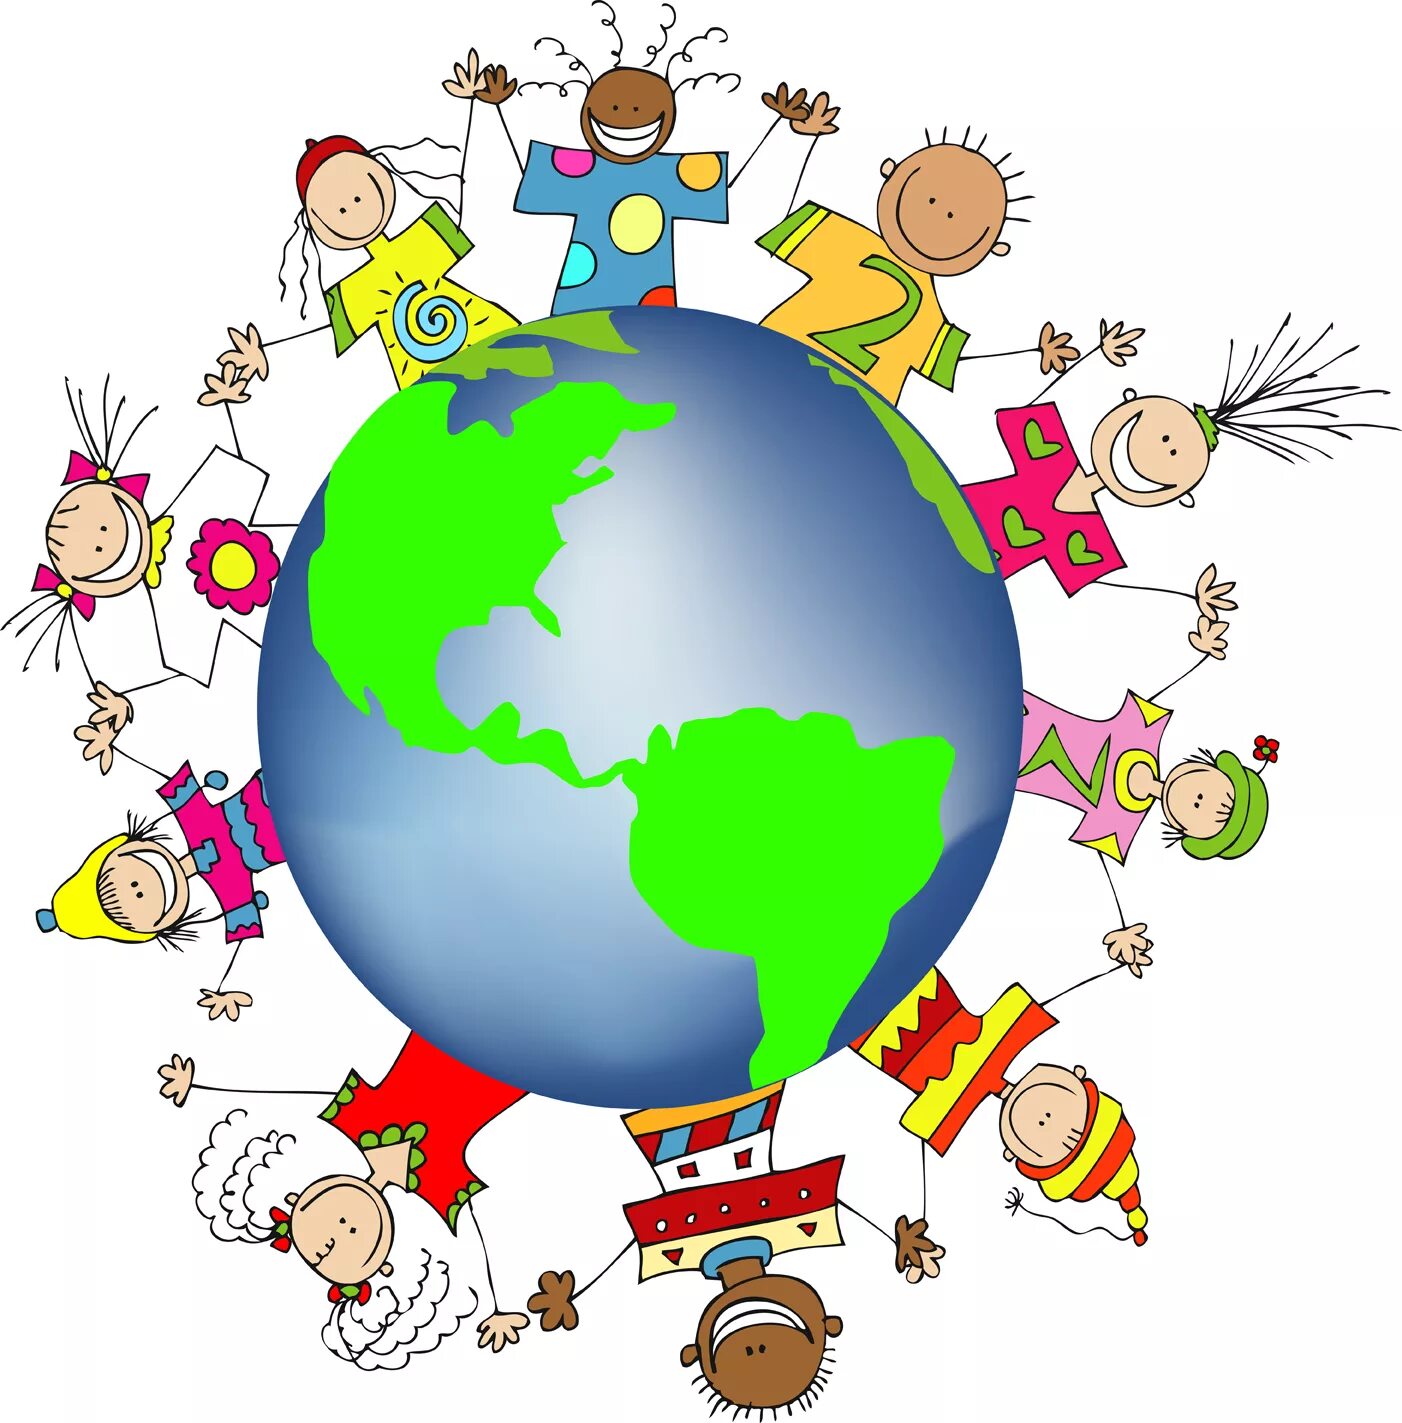 Around the planet. Изображение планеты земля для детей. Земной шар рисунок. Планета земля картинка для детей. Картинка планеты земля для детей дошкольного возраста.